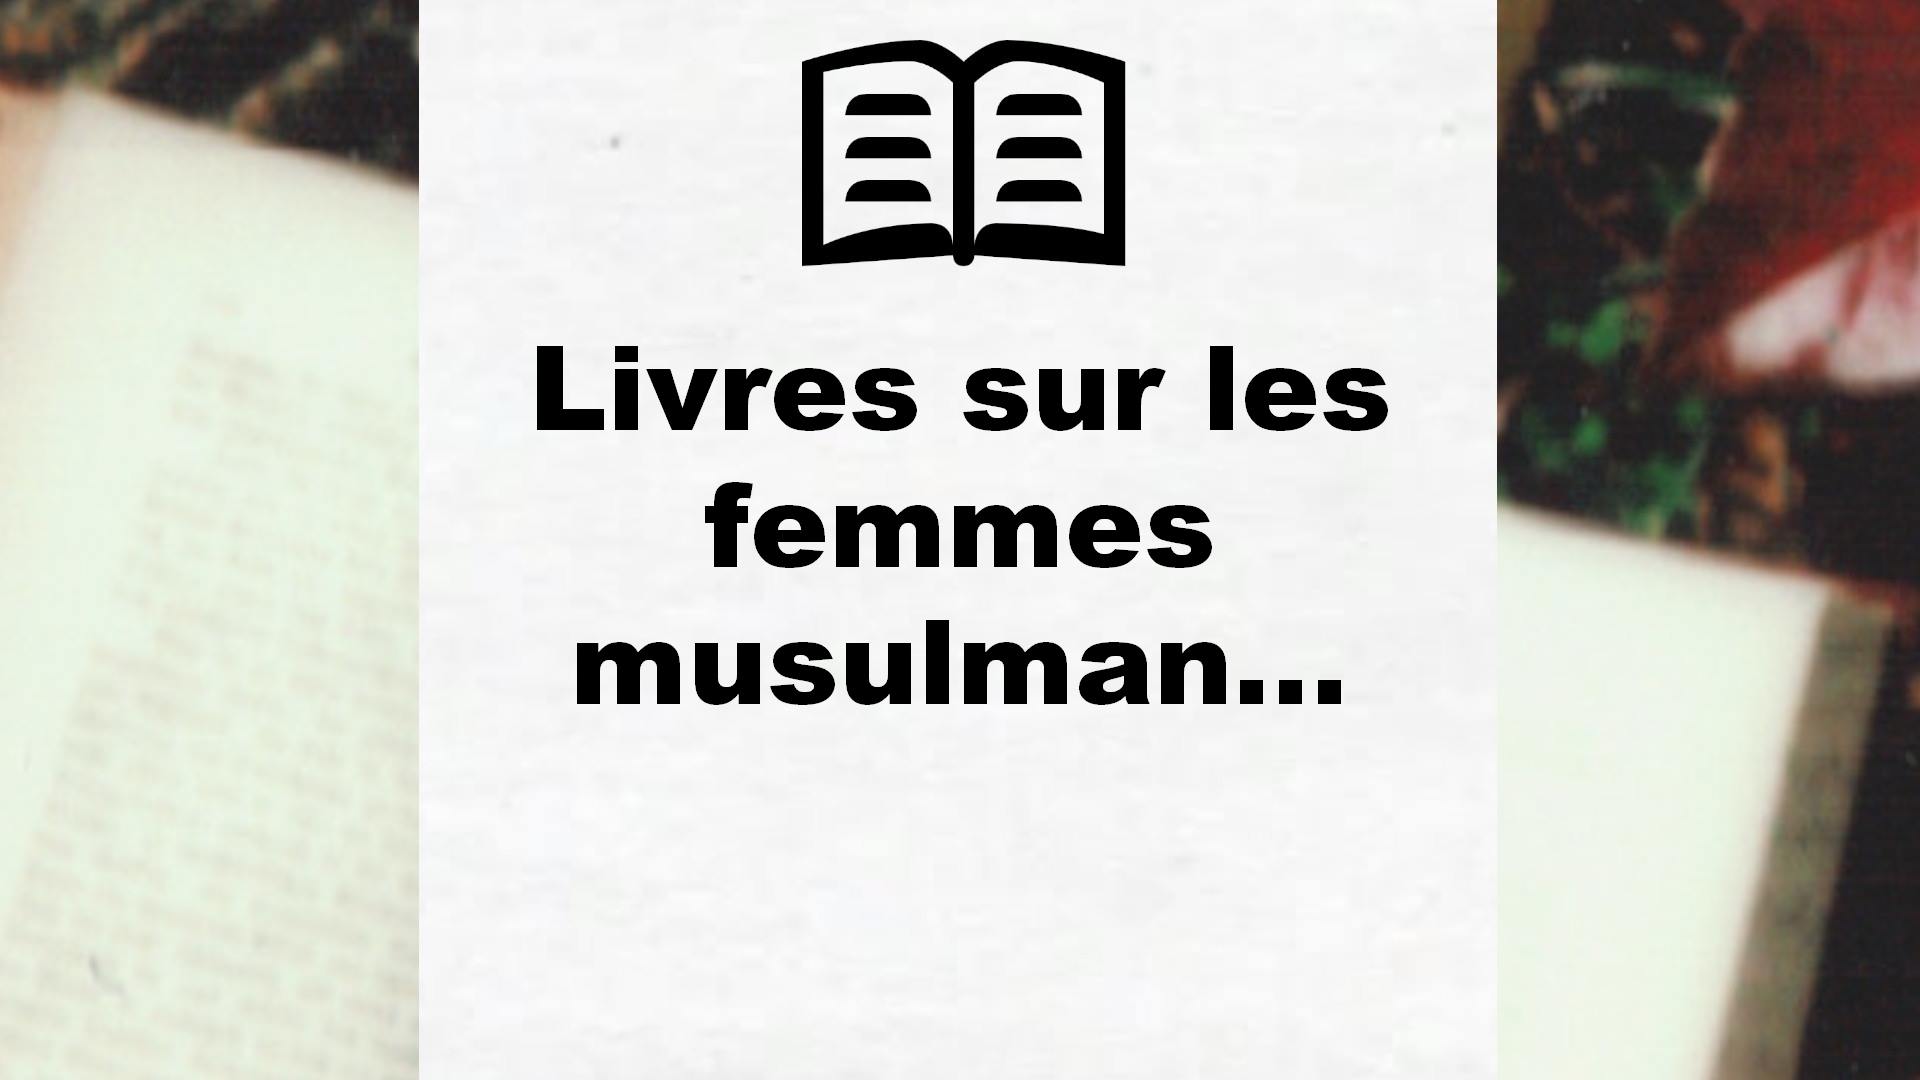 Livres sur les femmes musulmanes